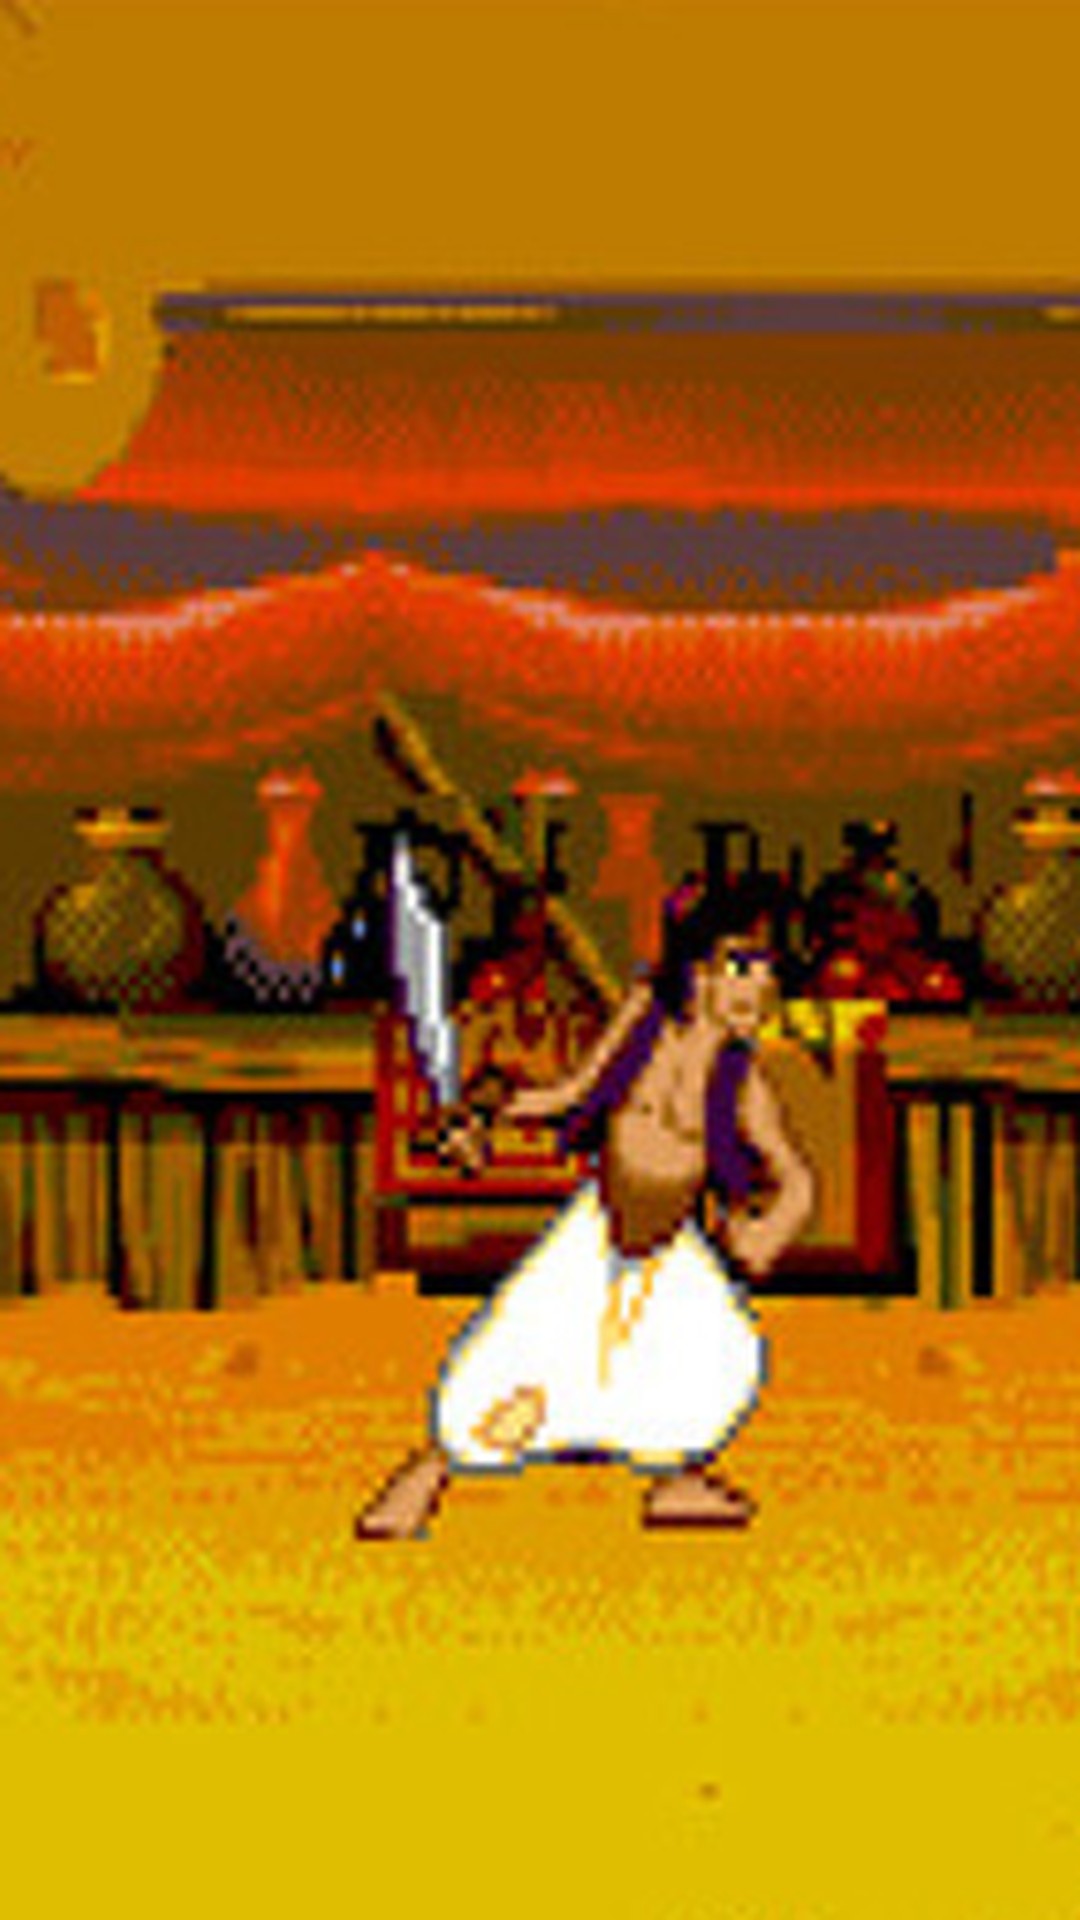 Rei Leão, Aladdin e Mogli ganham relançamento nos consoles e PC – Tecnoblog